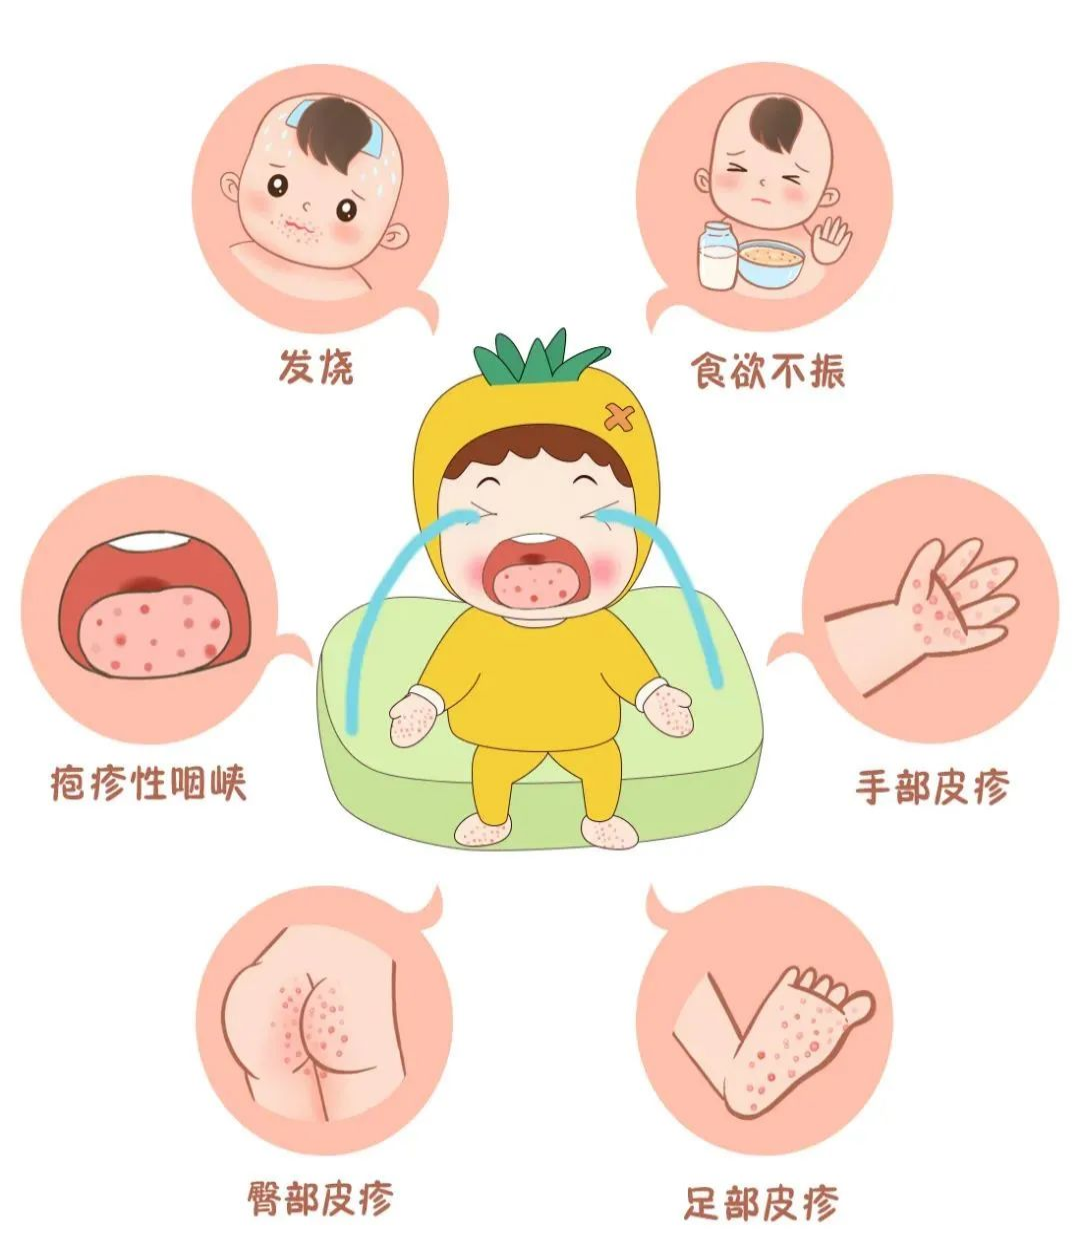 婴儿辅食过敏小疹子图;婴儿辅食过敏长小疹 警惕小心辨识处理